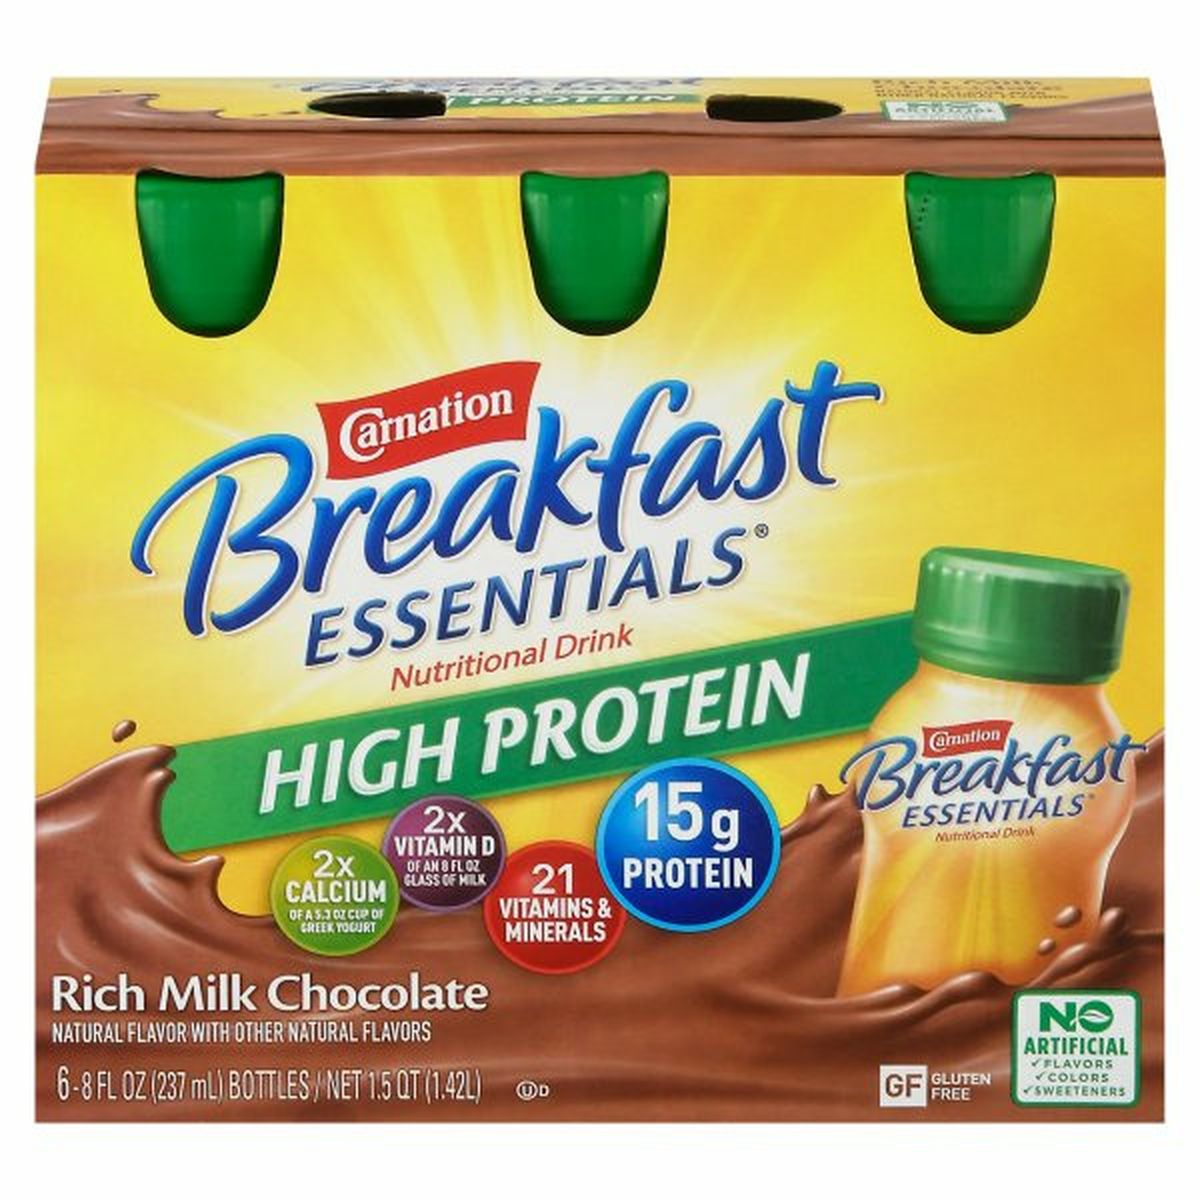 Calories in Carnation Breakfast Essentials Breakfast Essentials Nutritional Drink, High Protein, Rich Milk Chocolate, 6 Pack